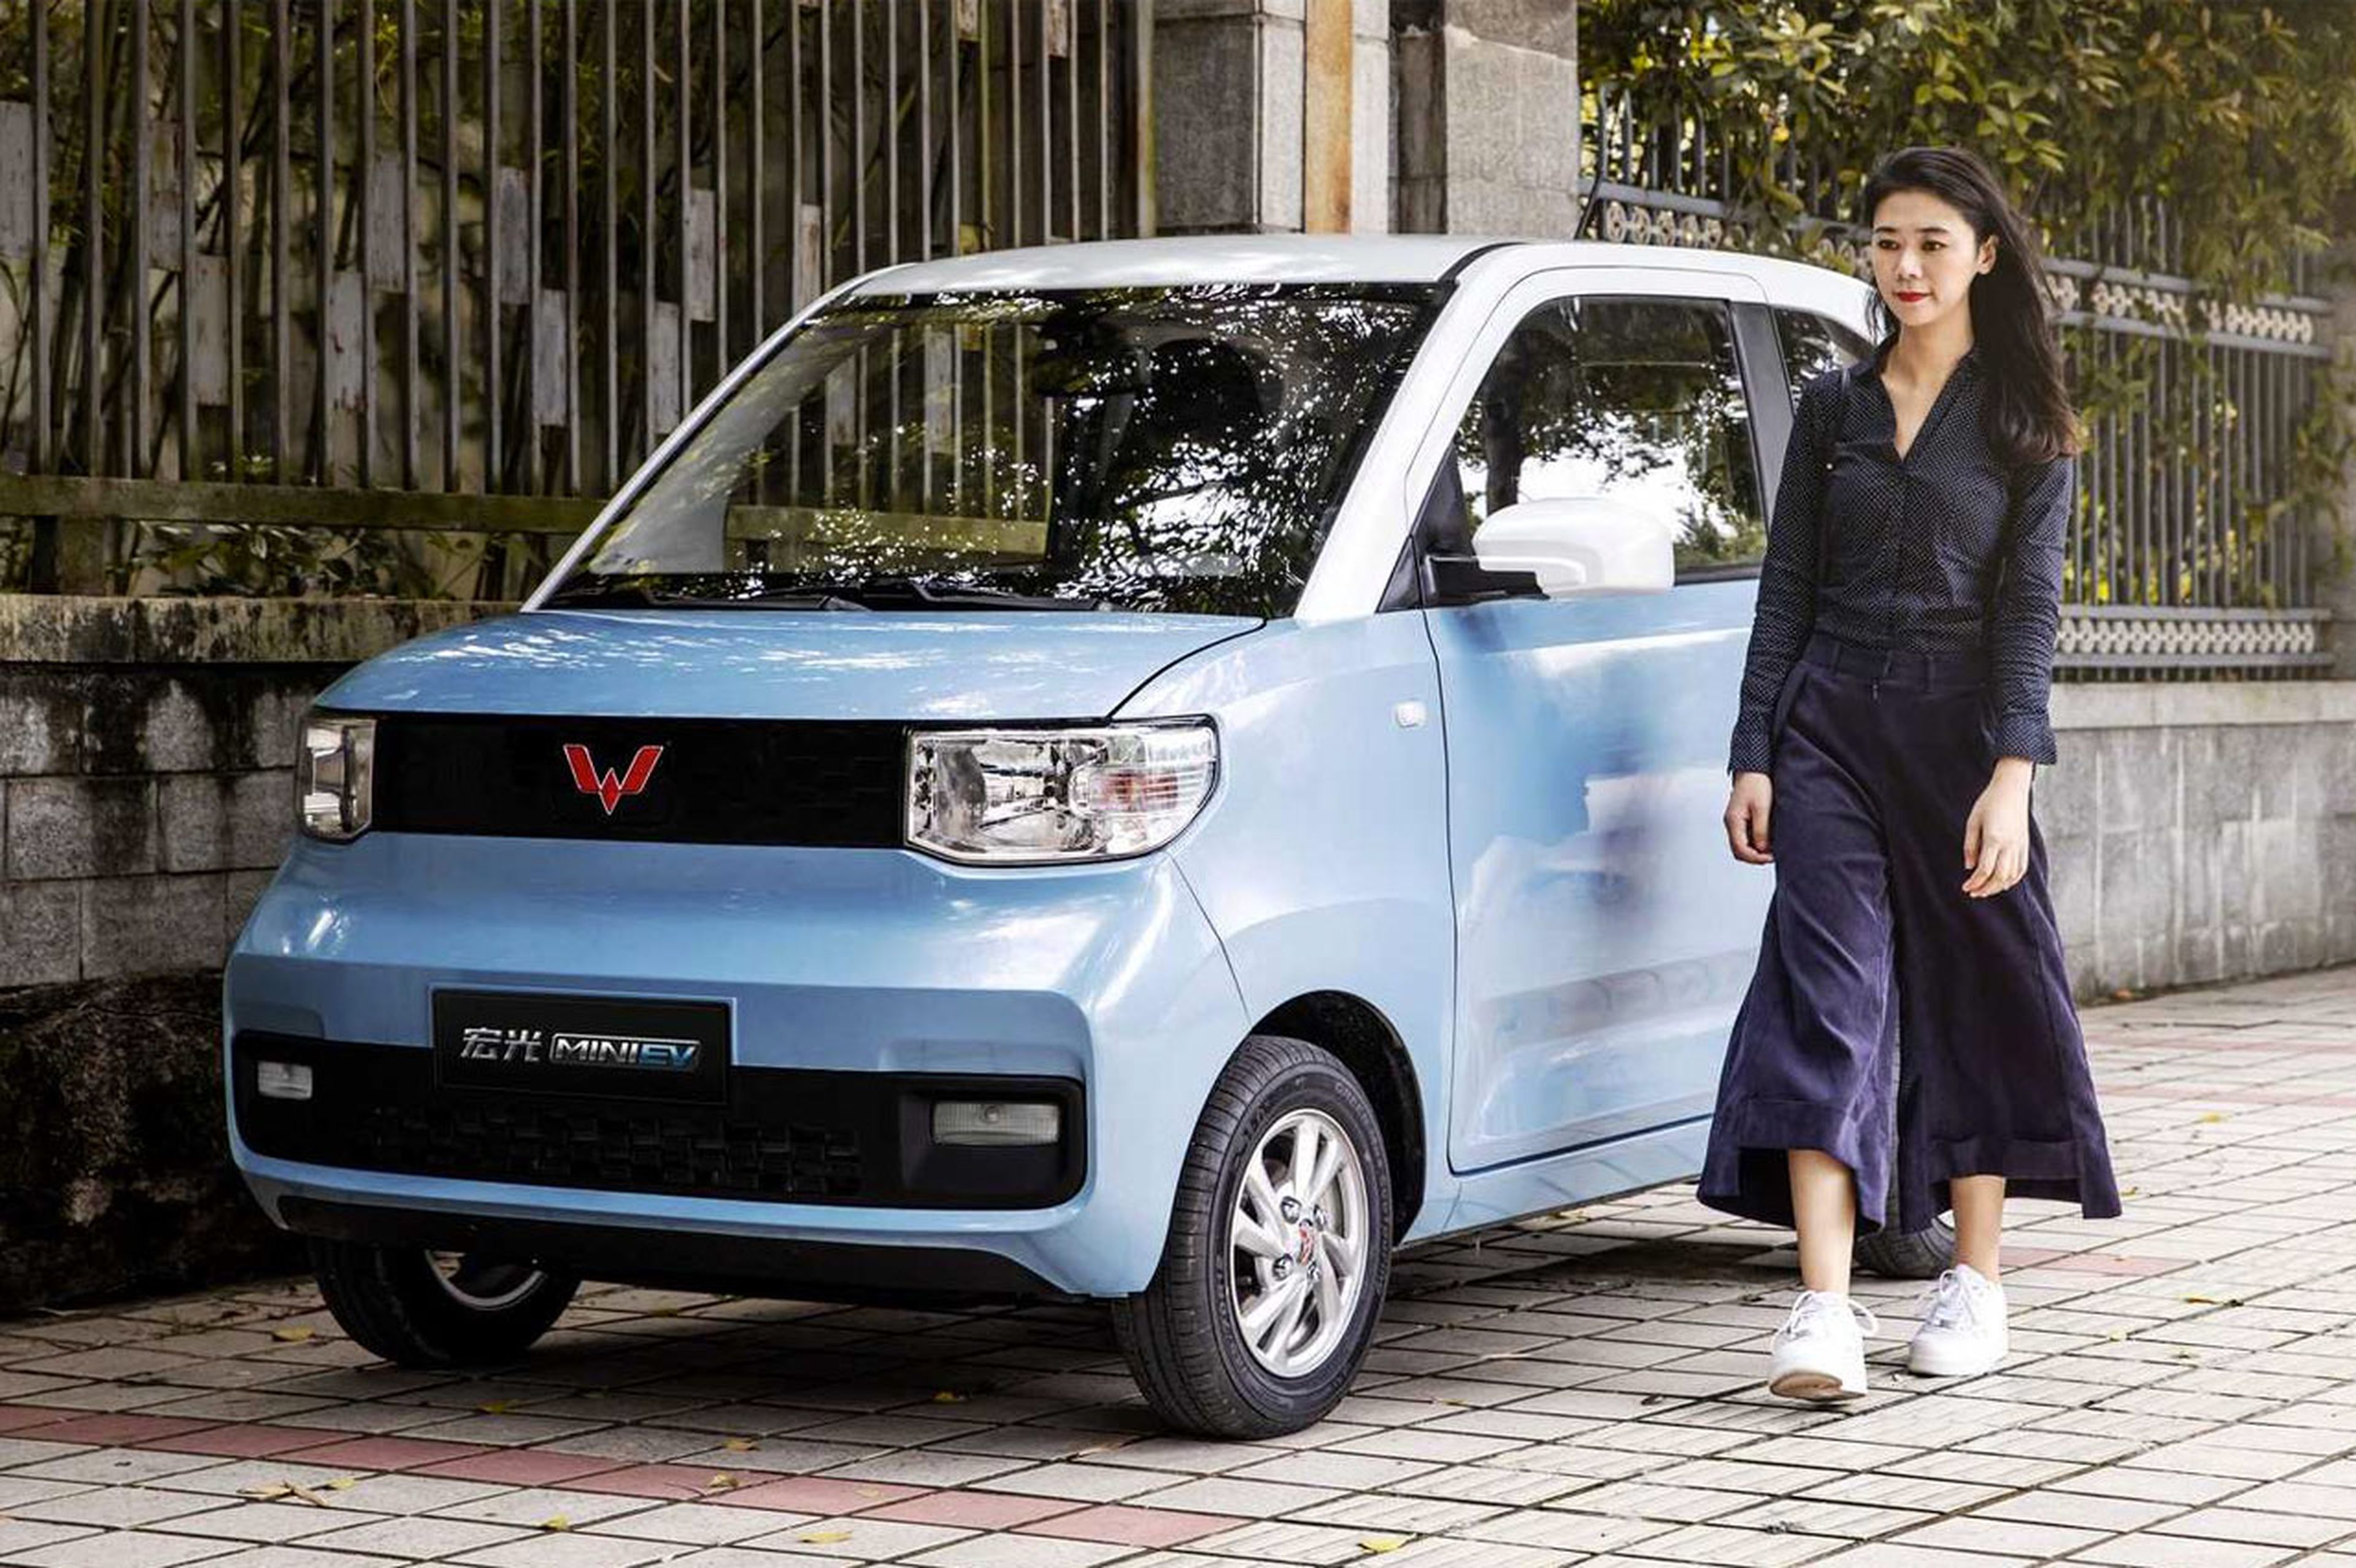 Las ventas de coches se desploman en China Wuling